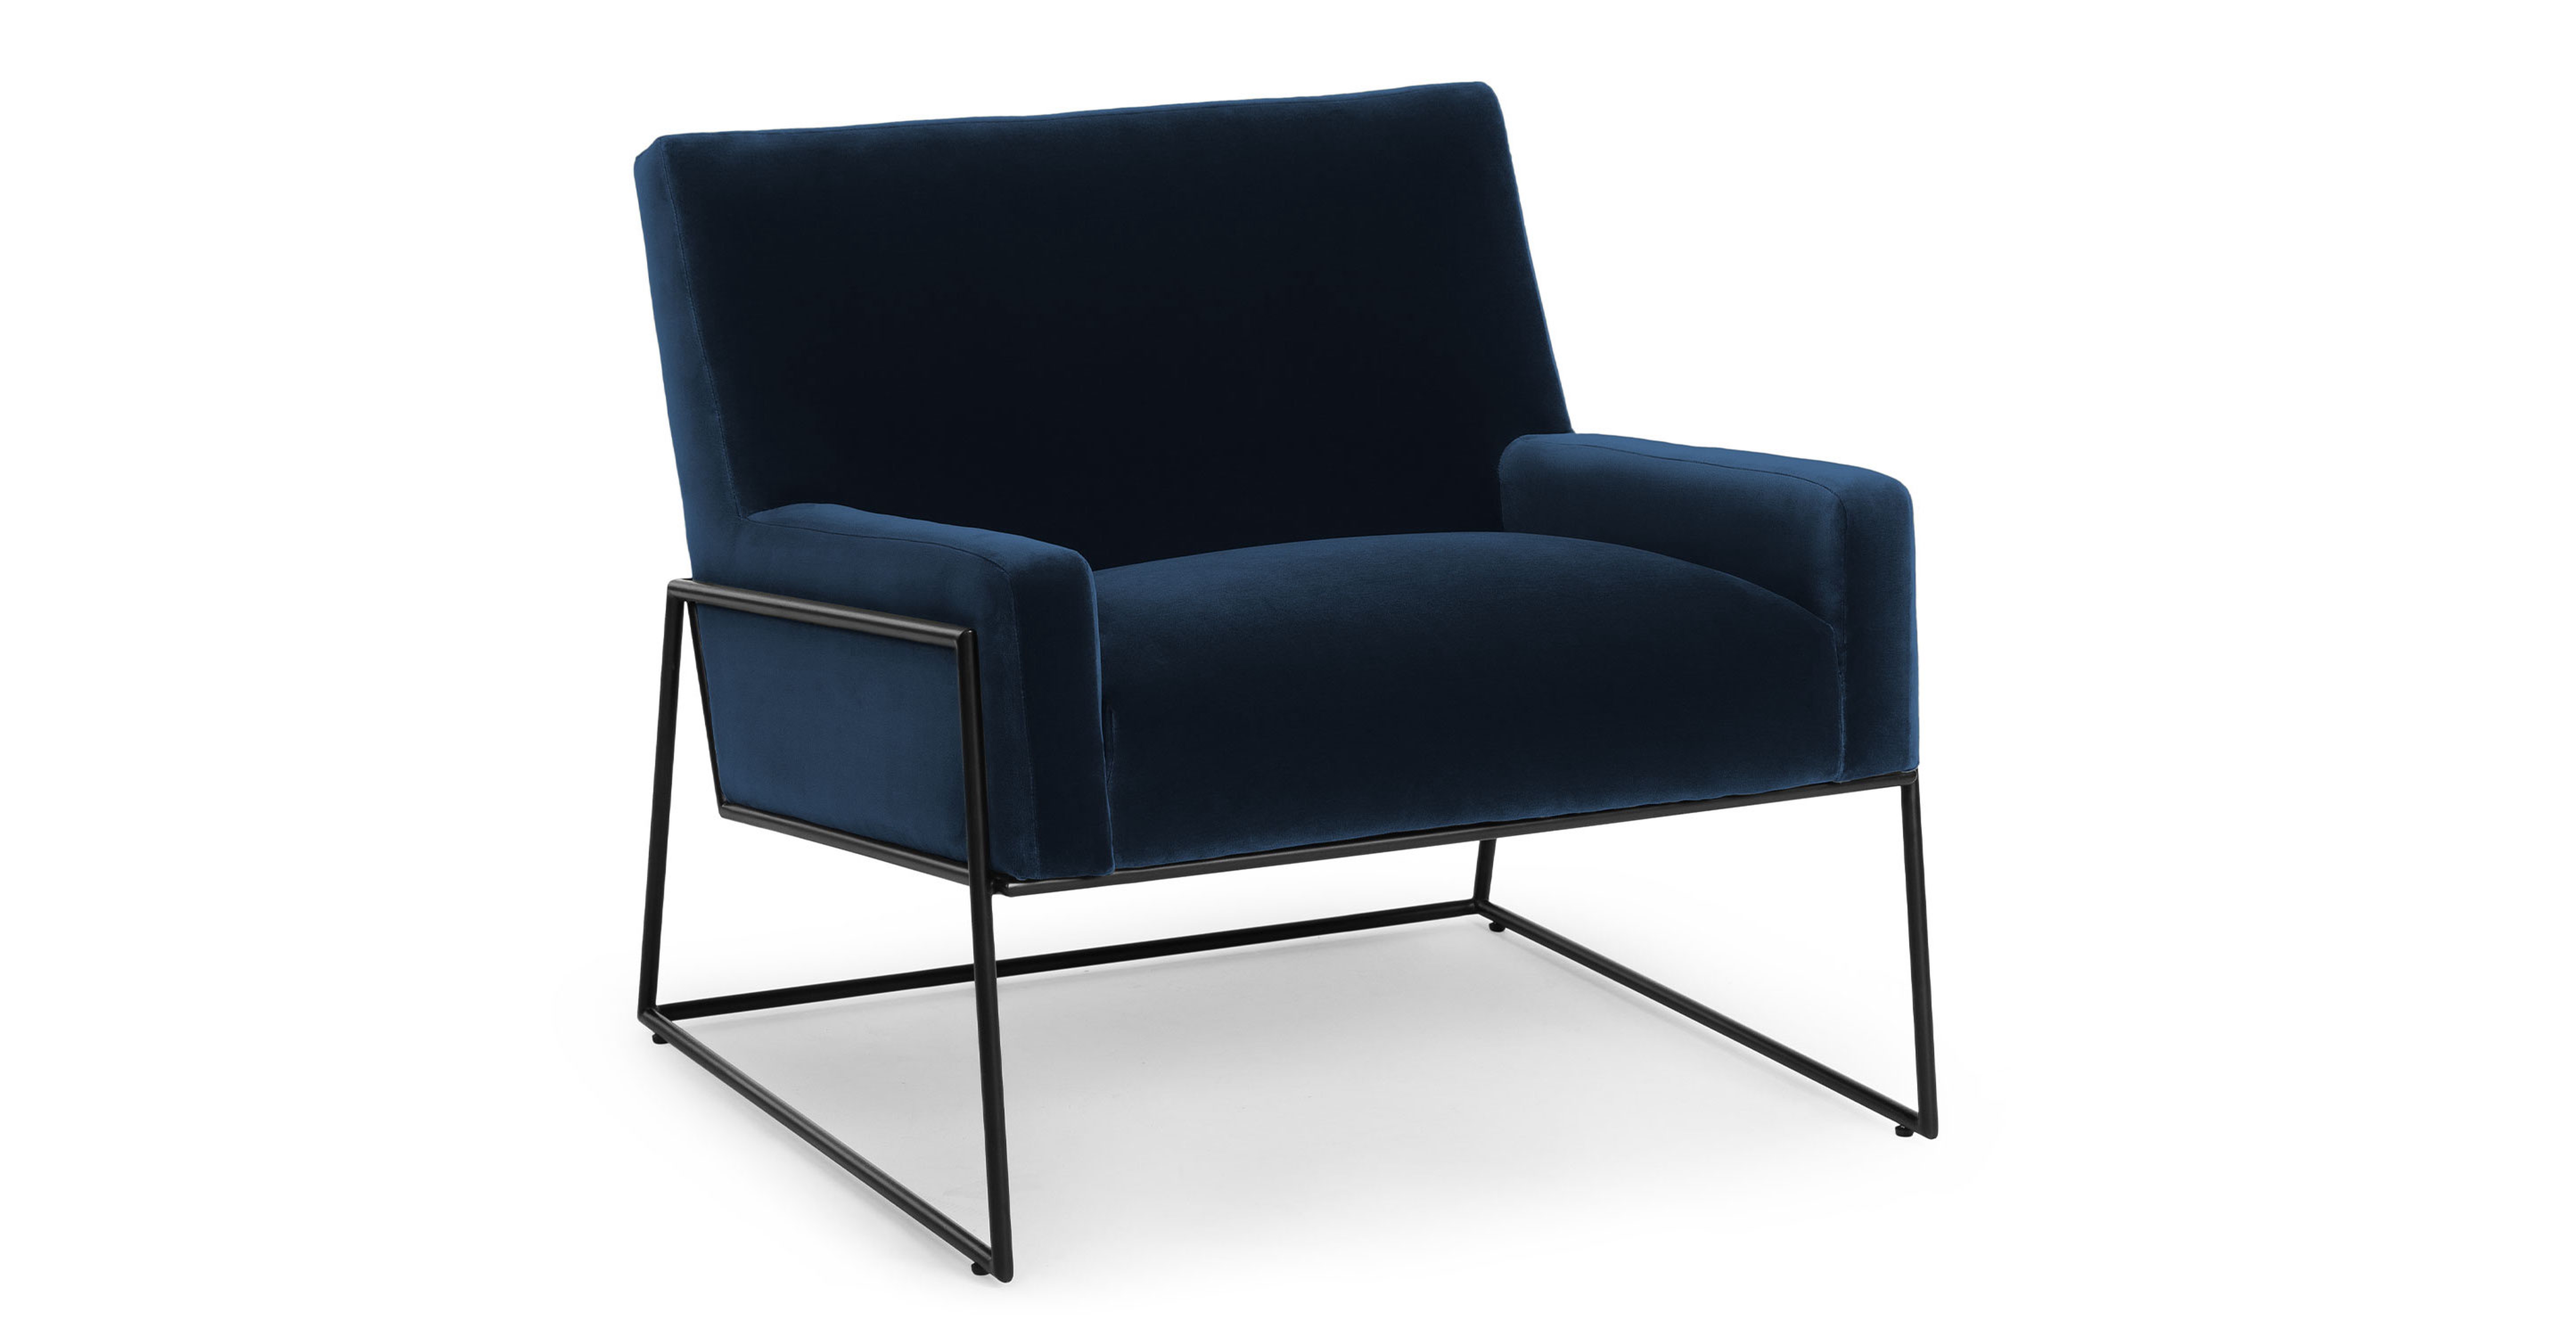 Regis Cascadia Blue Lounge Chair - Article